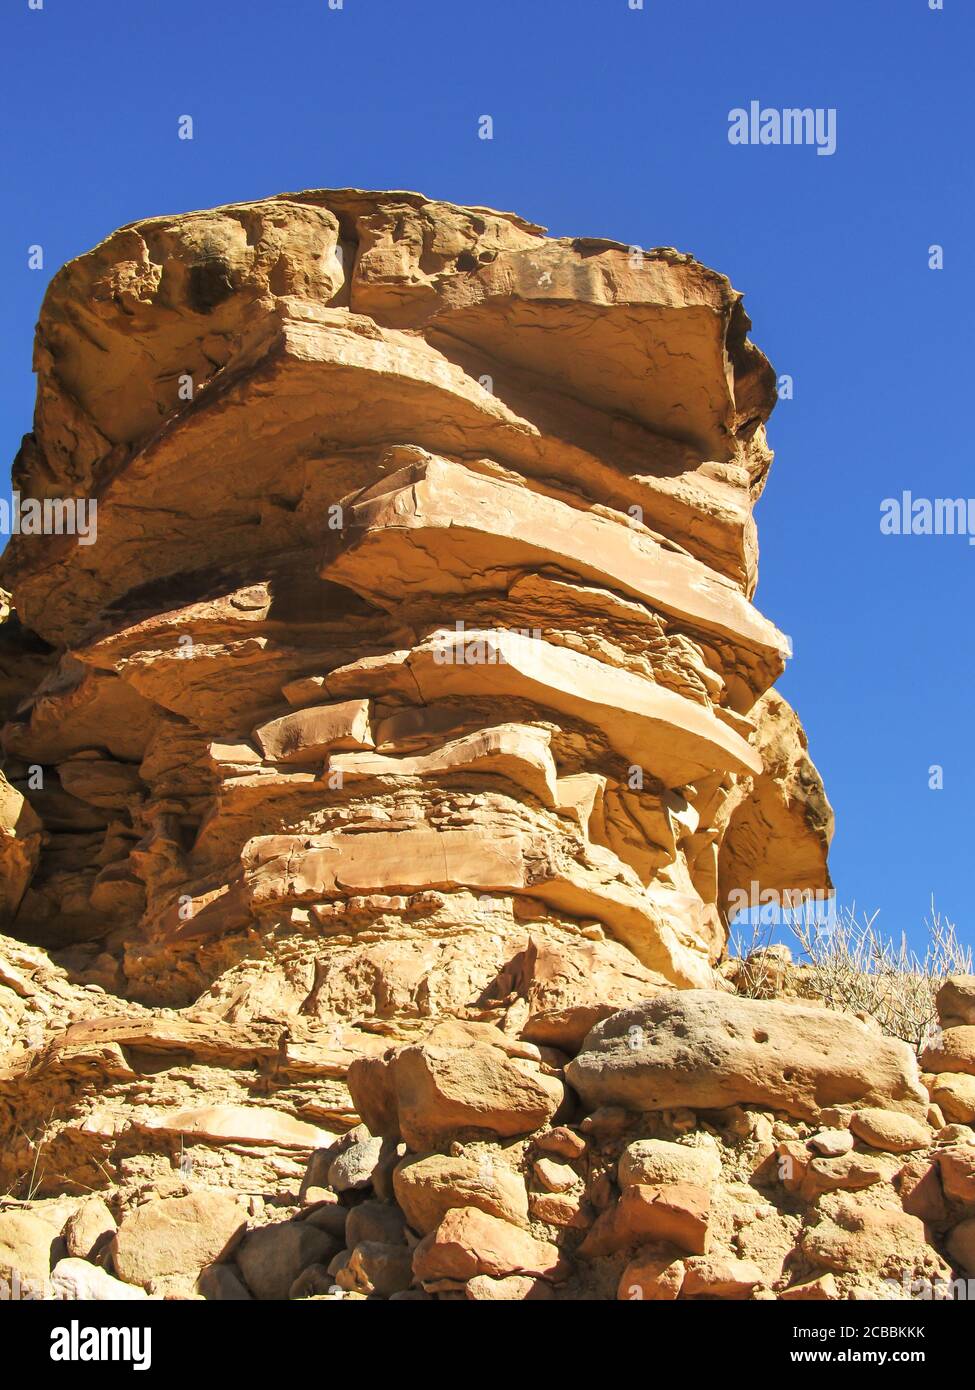 Ein Felsvorsprung in den Bookcliffs, Utah, USA, mit Schichten der frei häufigsten klastischen Sedimentgesteine, Sandstein, Sandstein und Schlamm Stockfoto